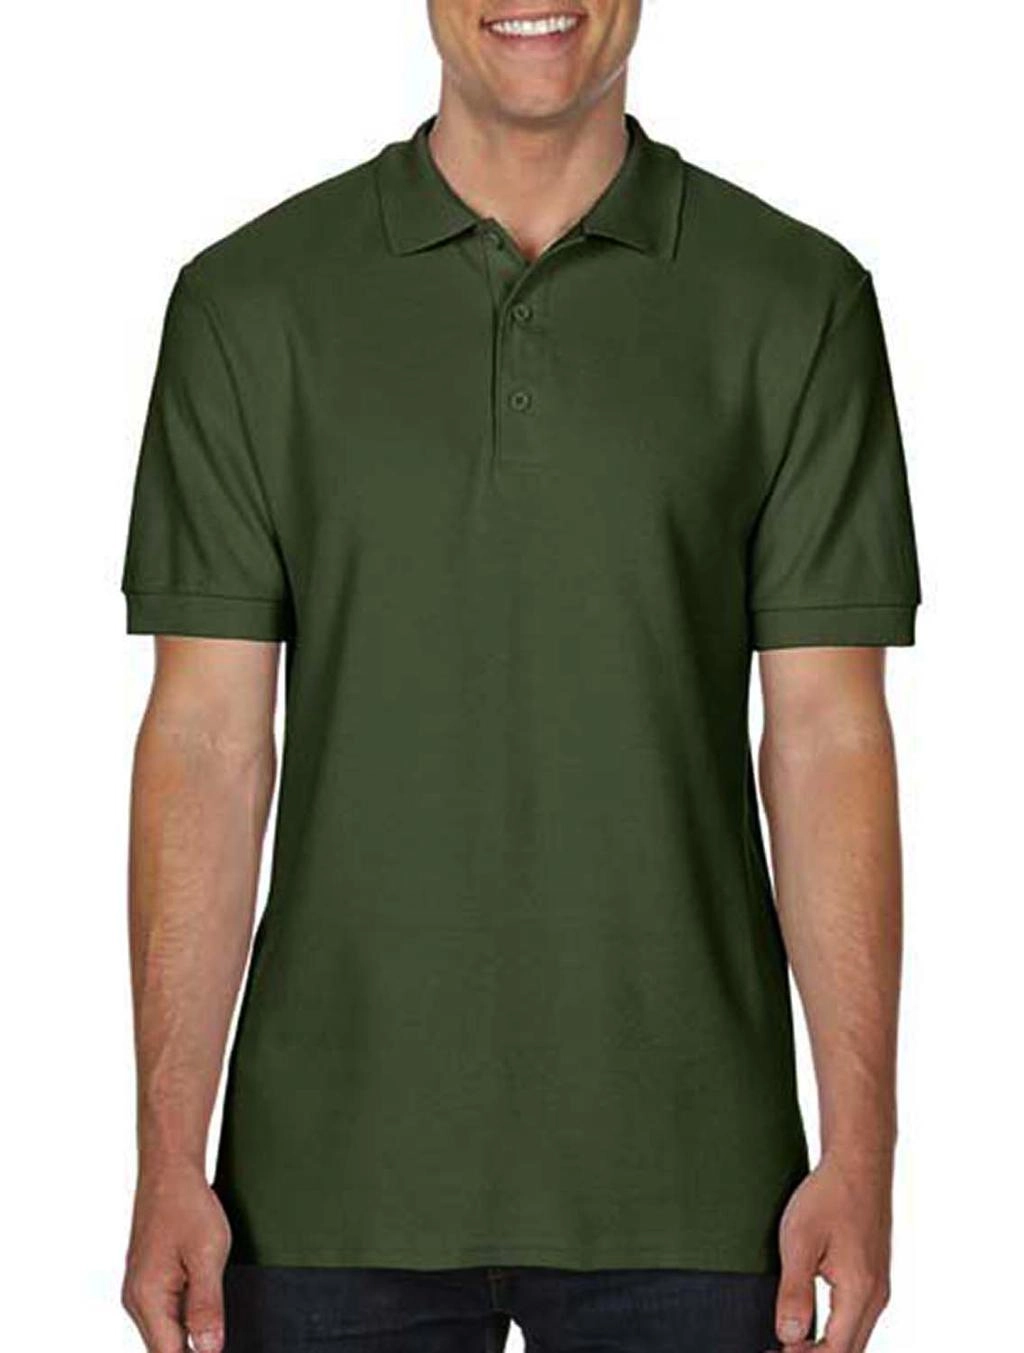 Premium Cotton Double Piqué Polo zum Besticken und Bedrucken in der Farbe Military Green mit Ihren Logo, Schriftzug oder Motiv.